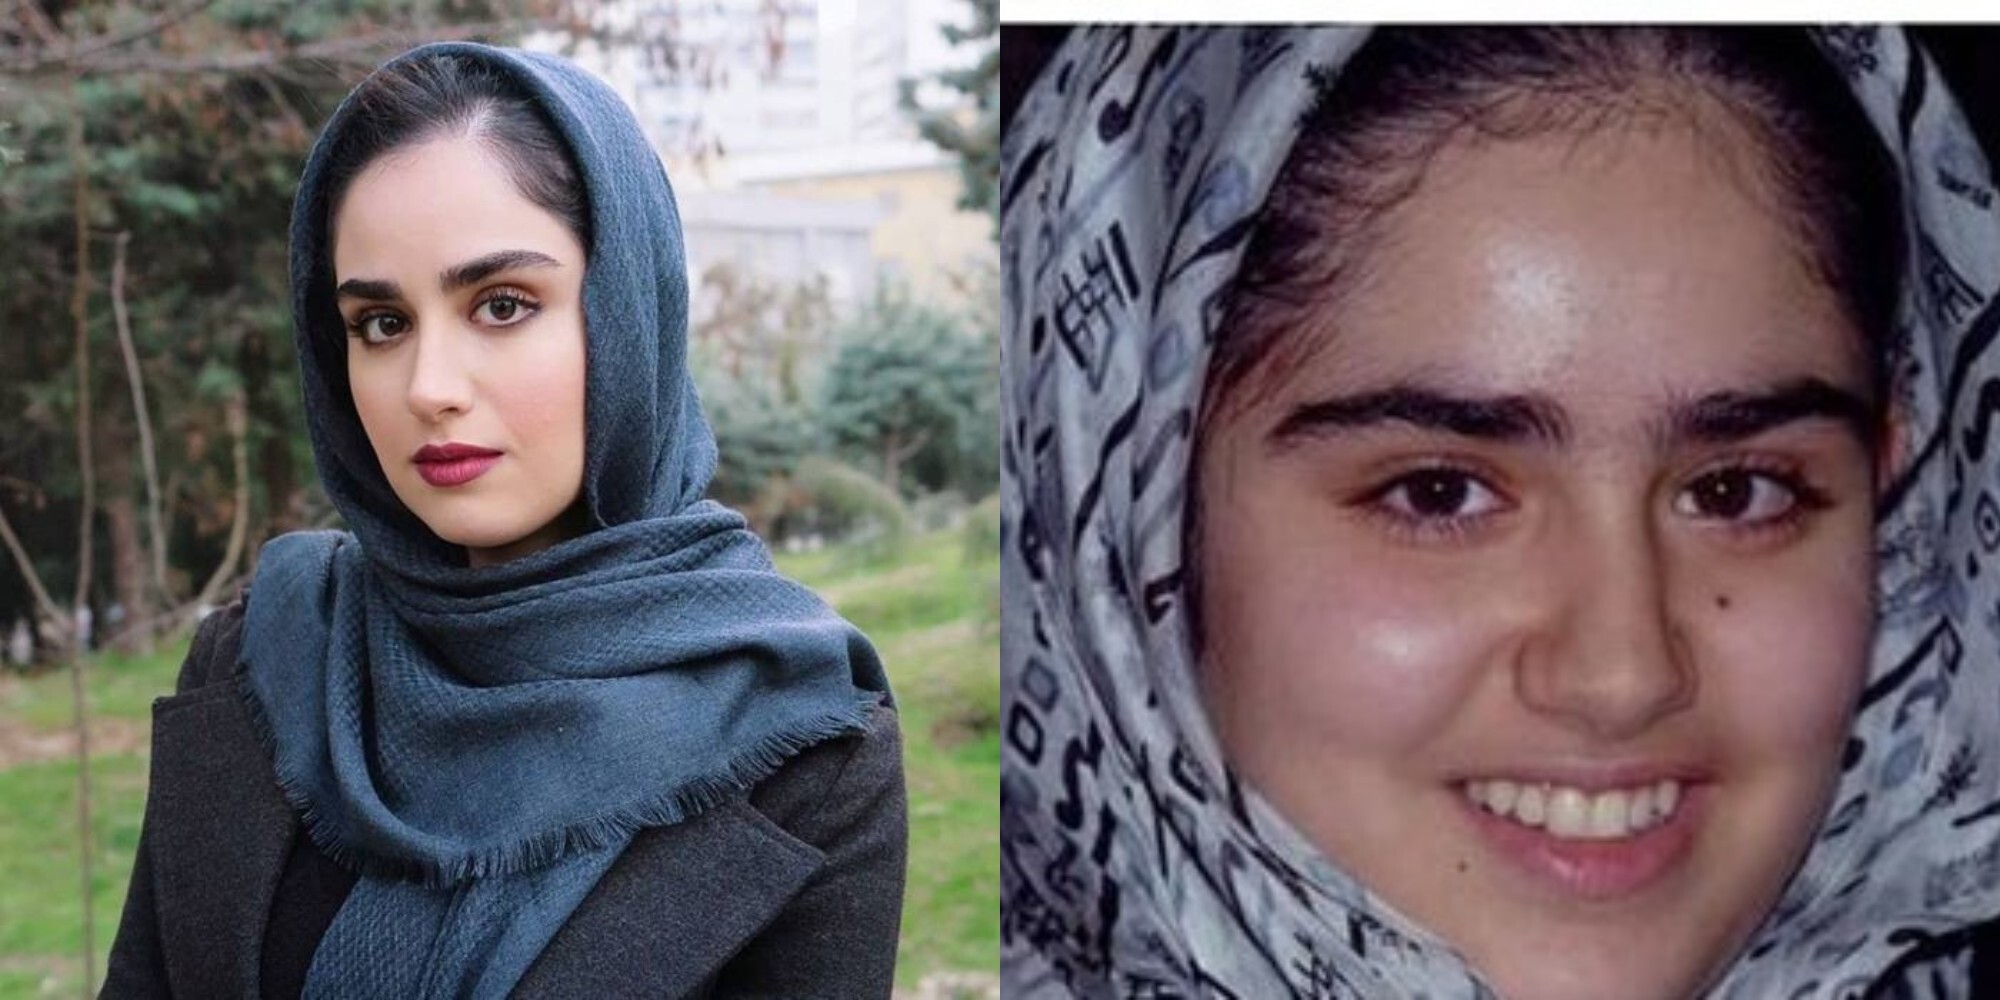 عکسهای دوره دبیرستان بازیگران ایرانی